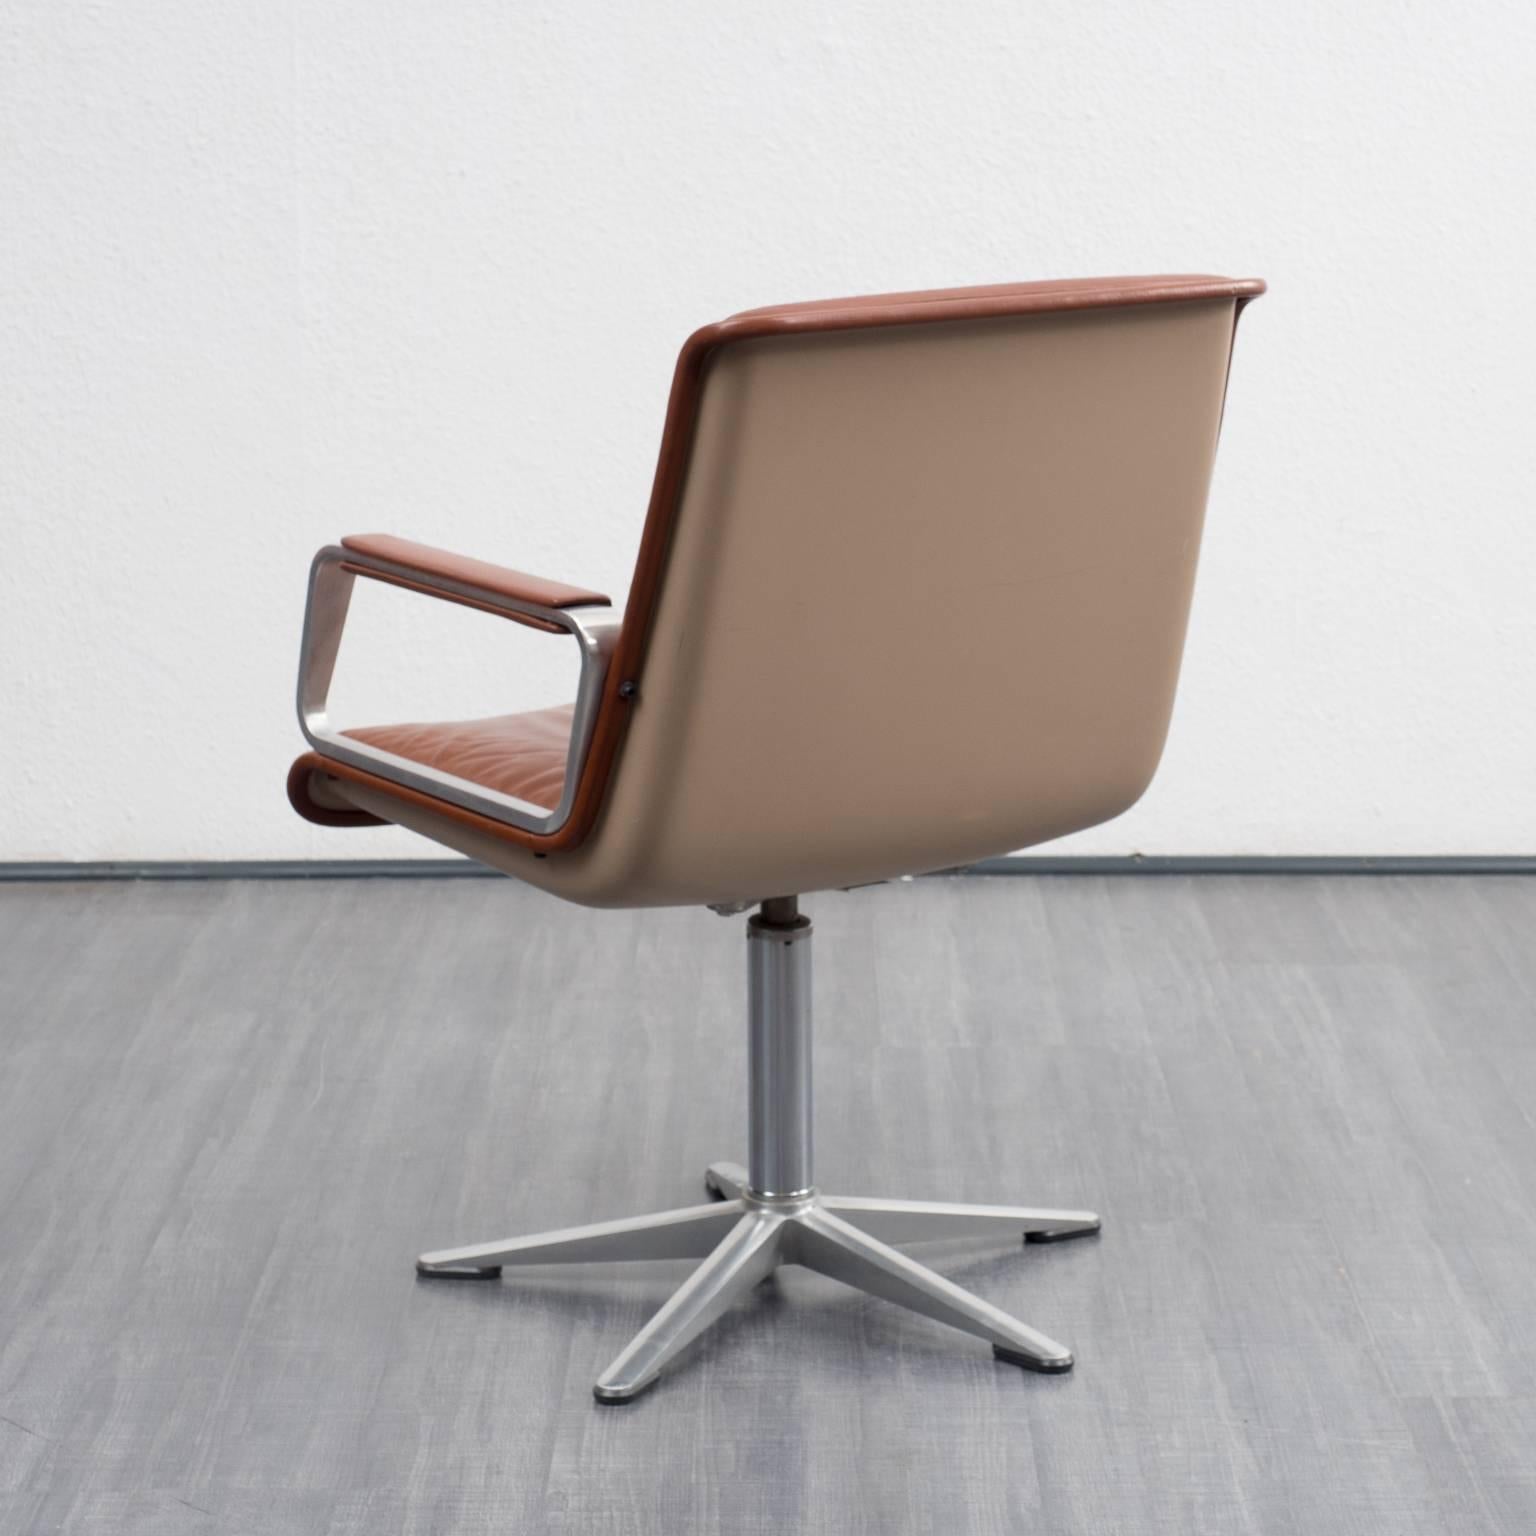 Mid-Century Modern Office Chair / Executive Chair, Wilkhahn Stereo 2000